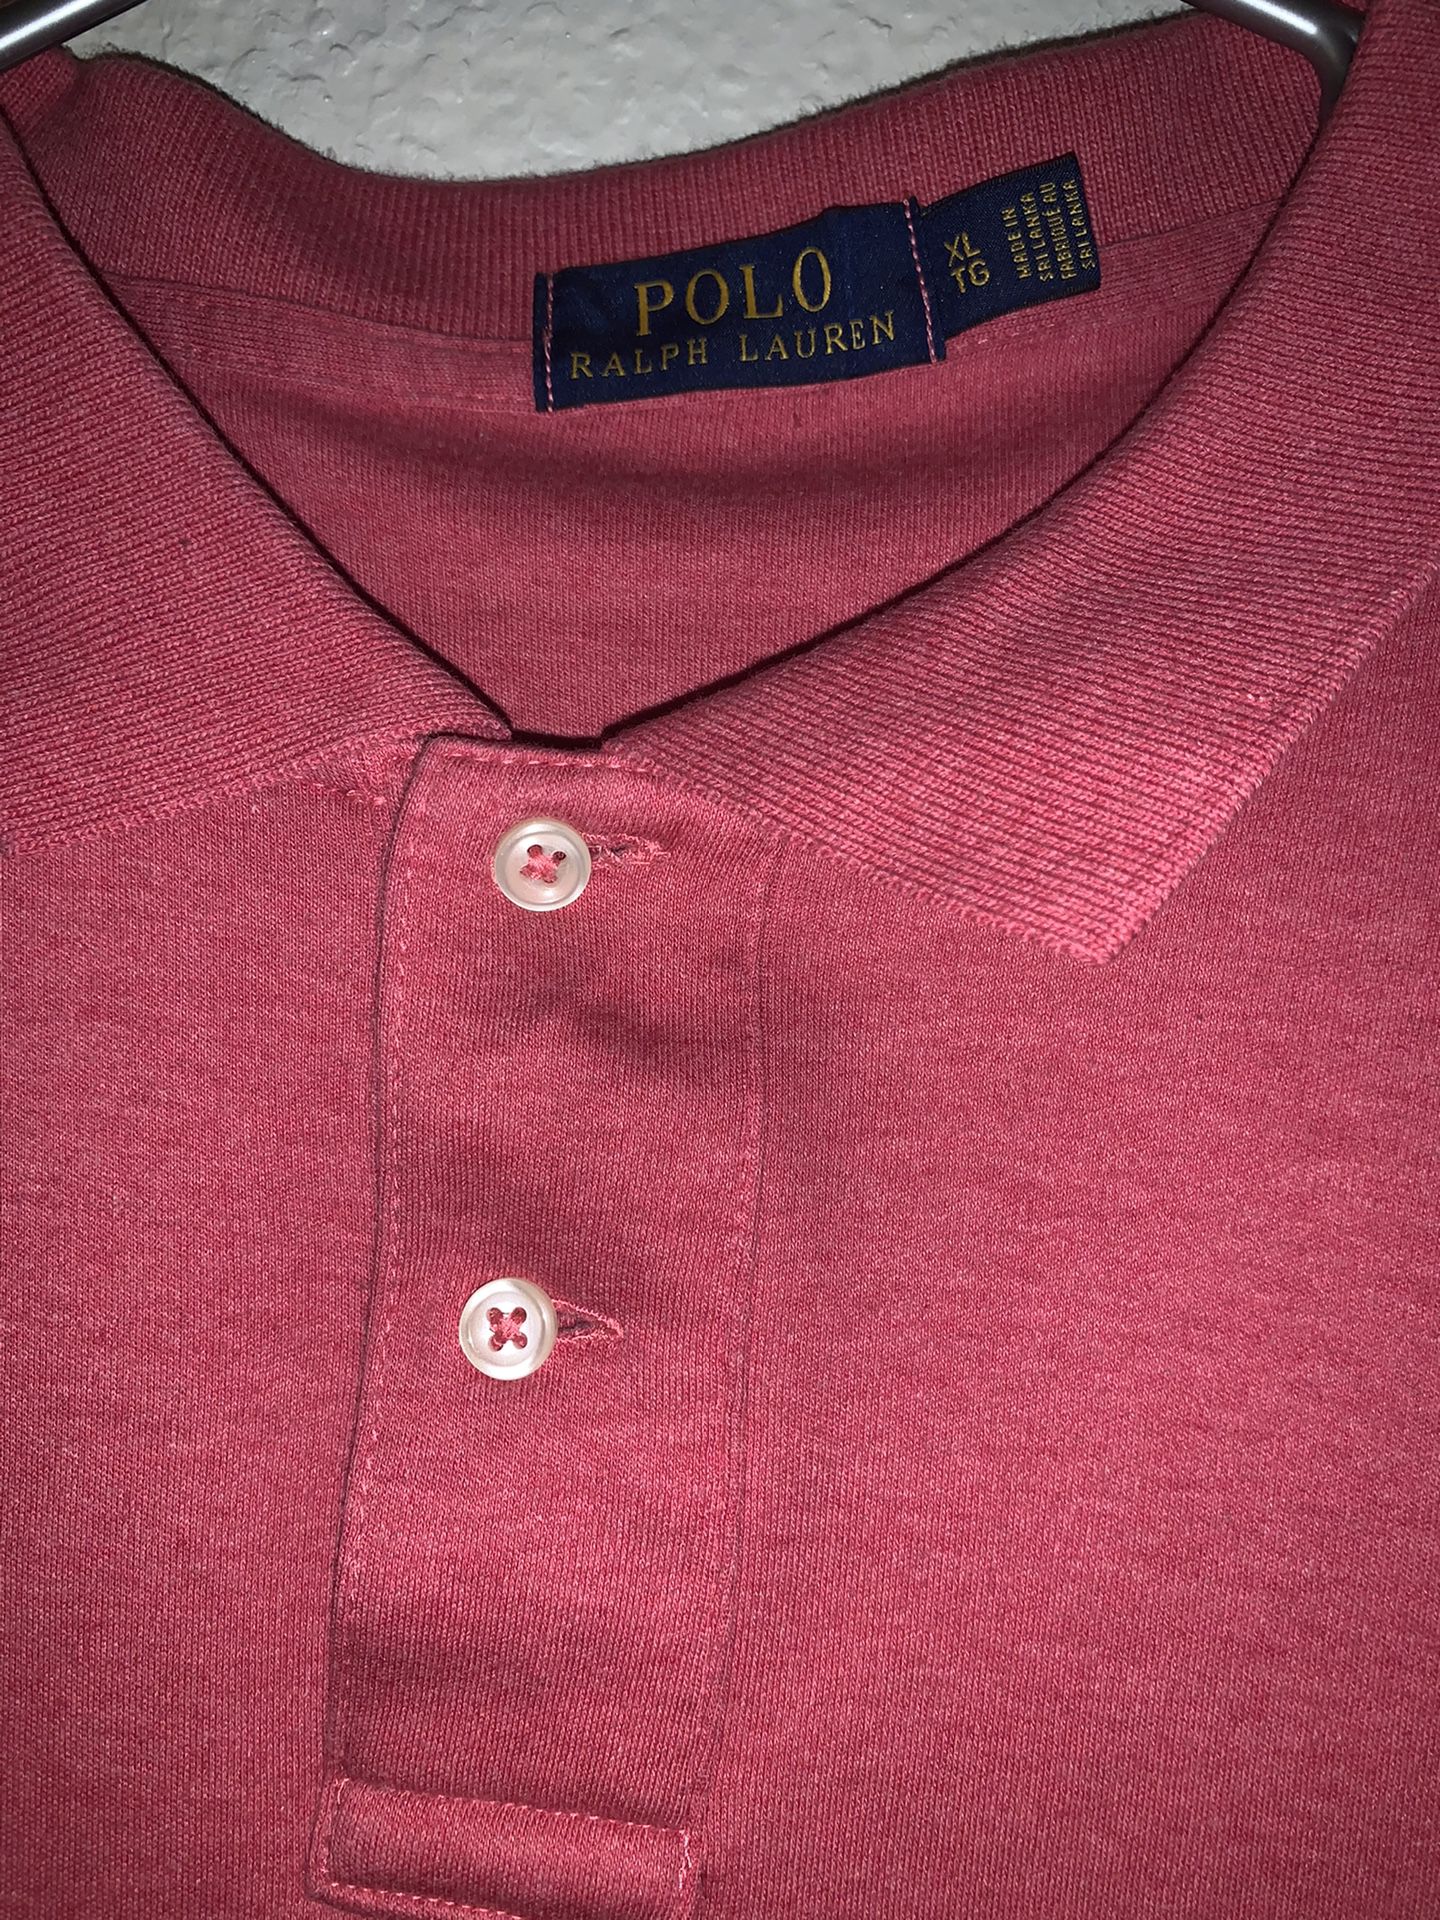 Polo Ralph Lauren red shirt